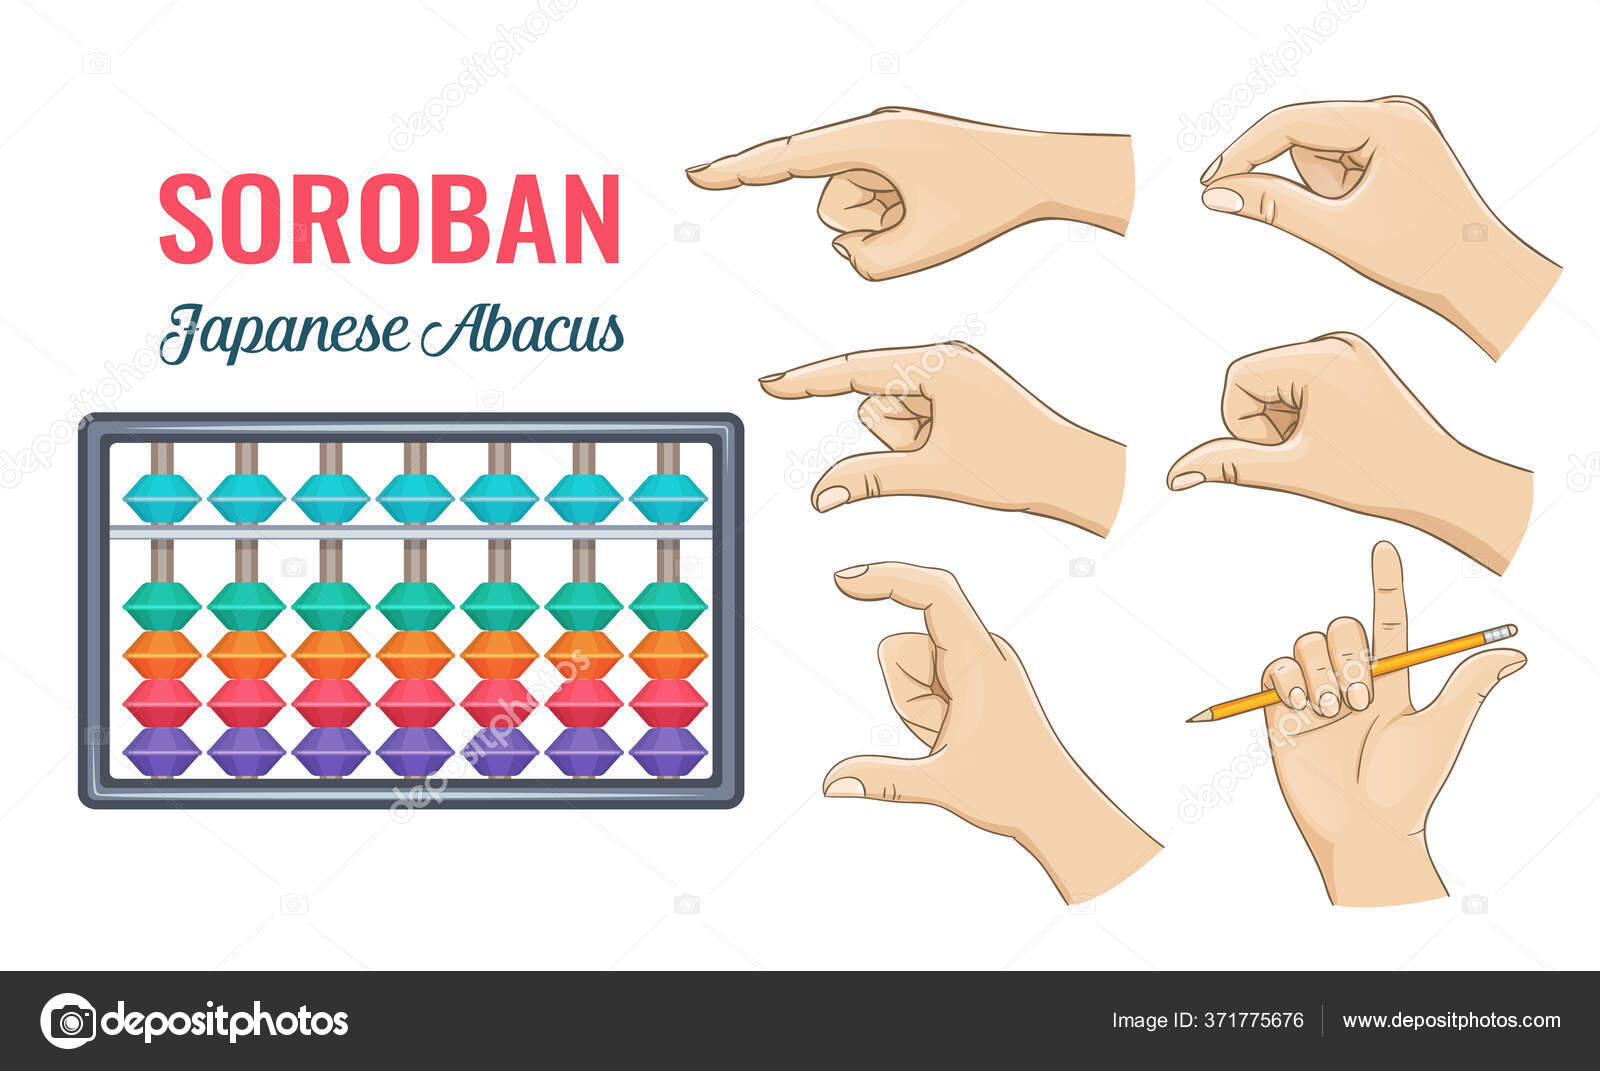 Японский счет соробан на пальцах рук: Японская методика обучения счету в уме Соробан